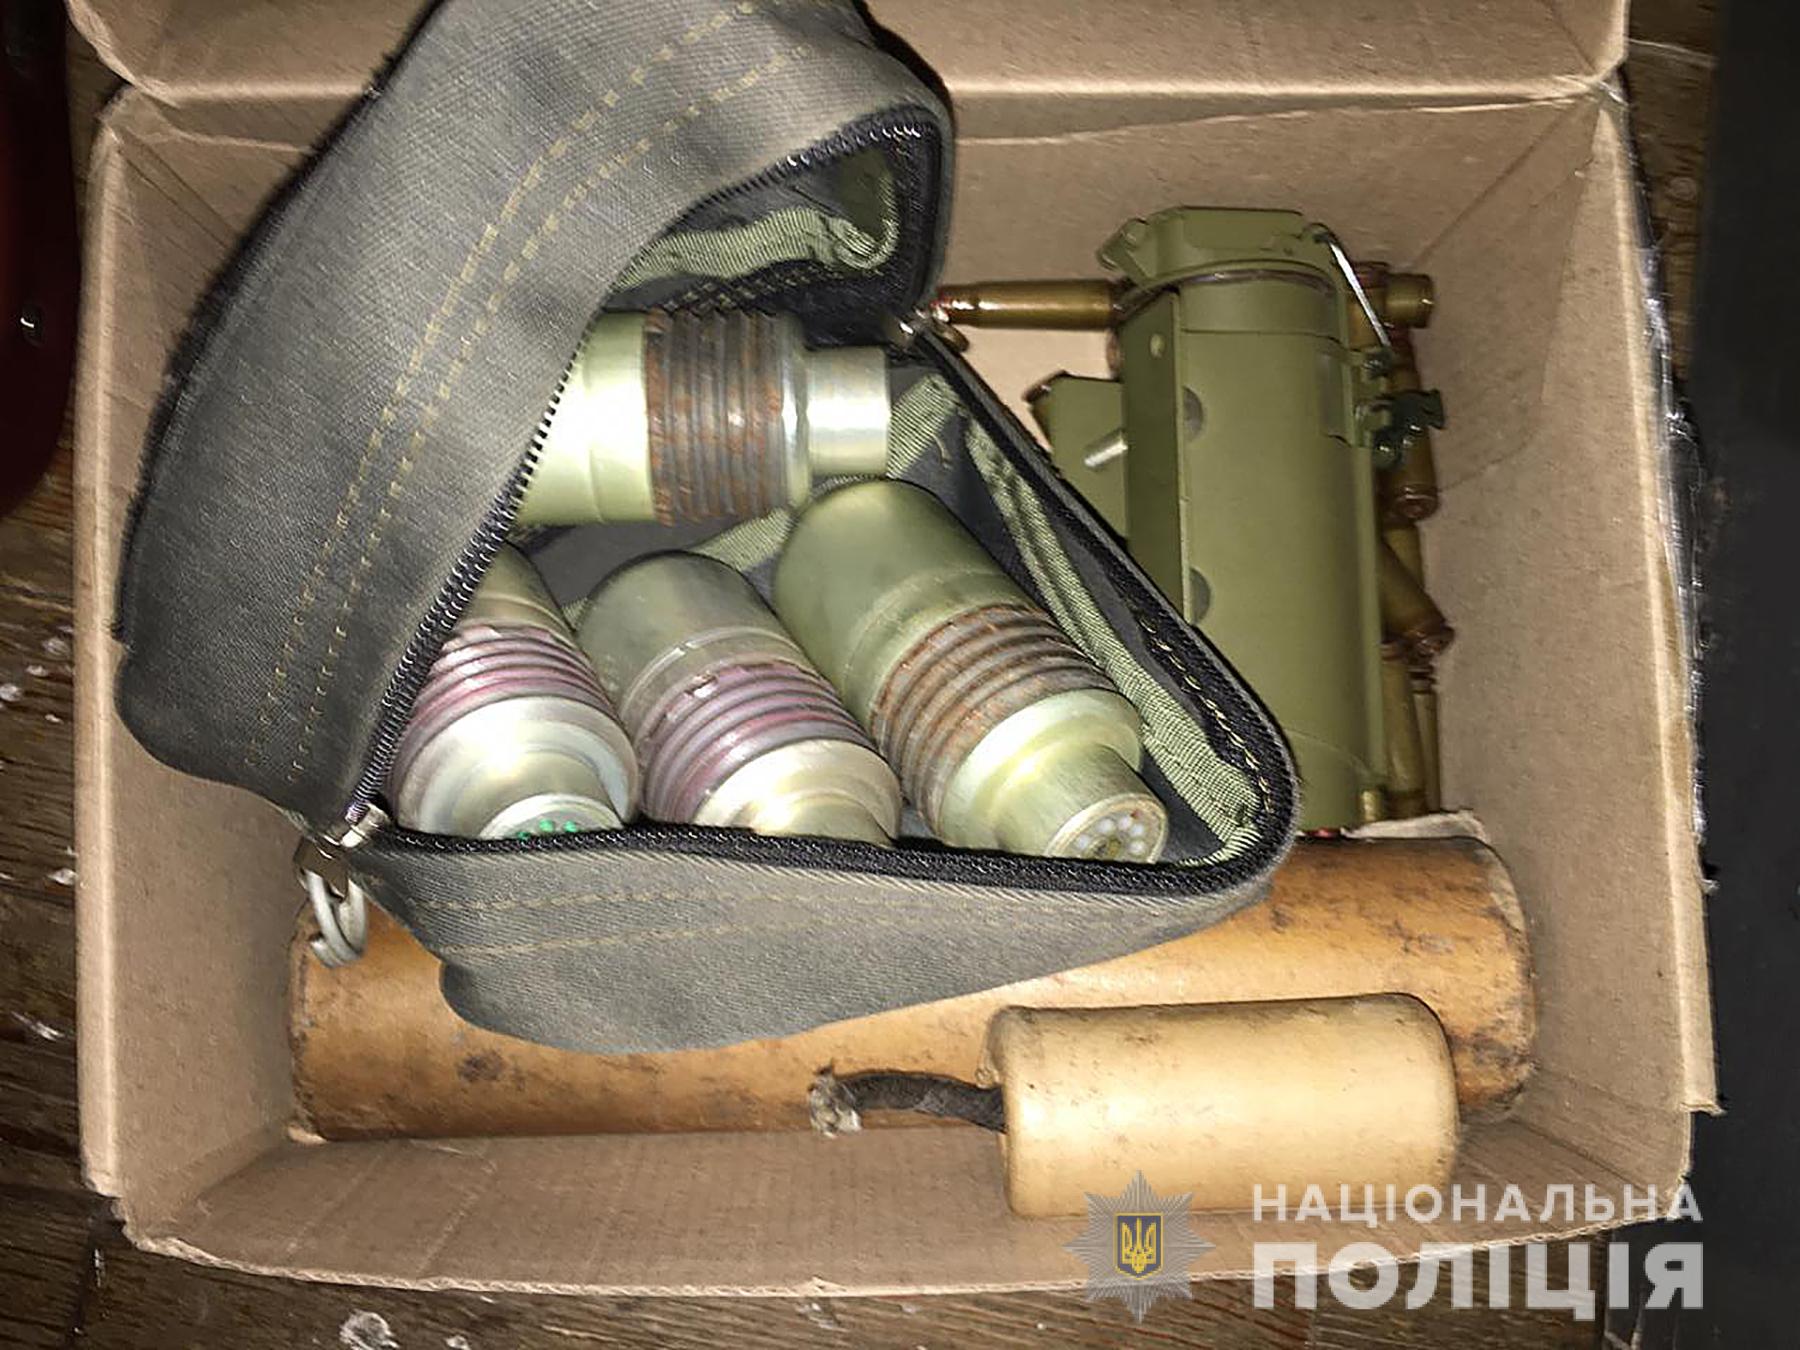 У мужчины, который стрел в Бердянске по детям, изъяли целый арсенал оружия. Фото: Нацполиция